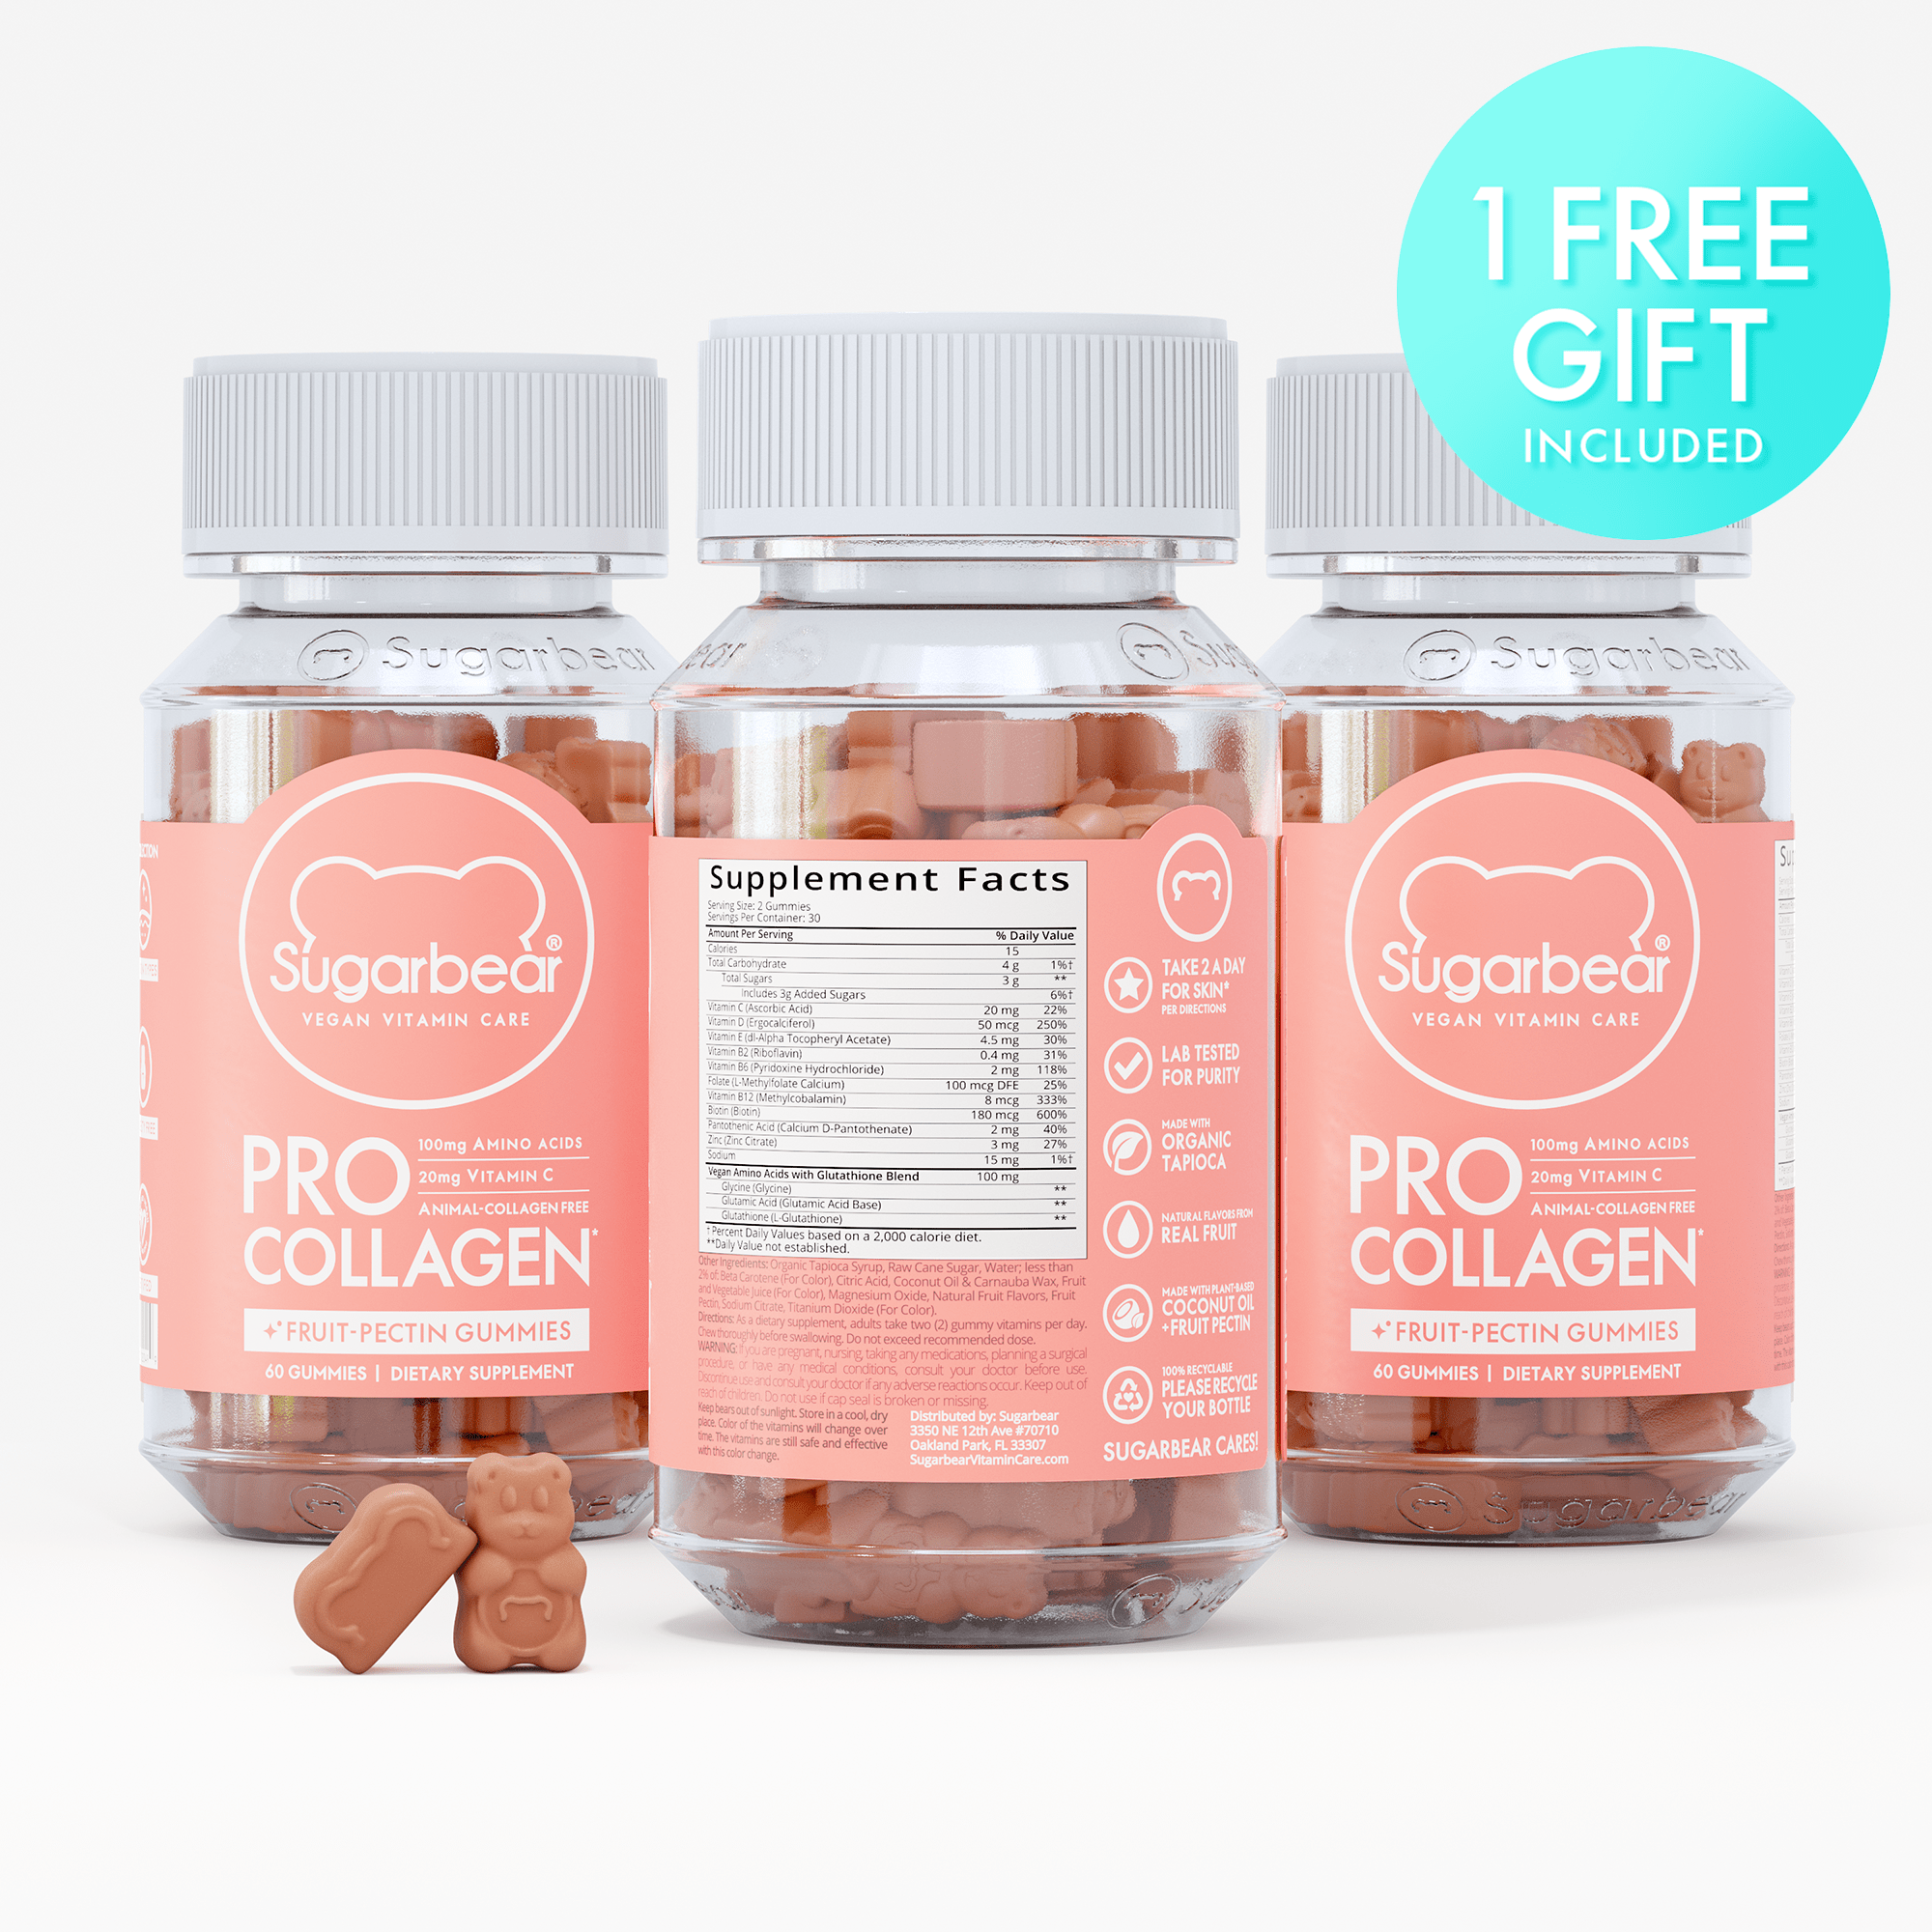 Sugarbear ProCollagen Vitamins - Paquete de 3 meses + regalo gratis